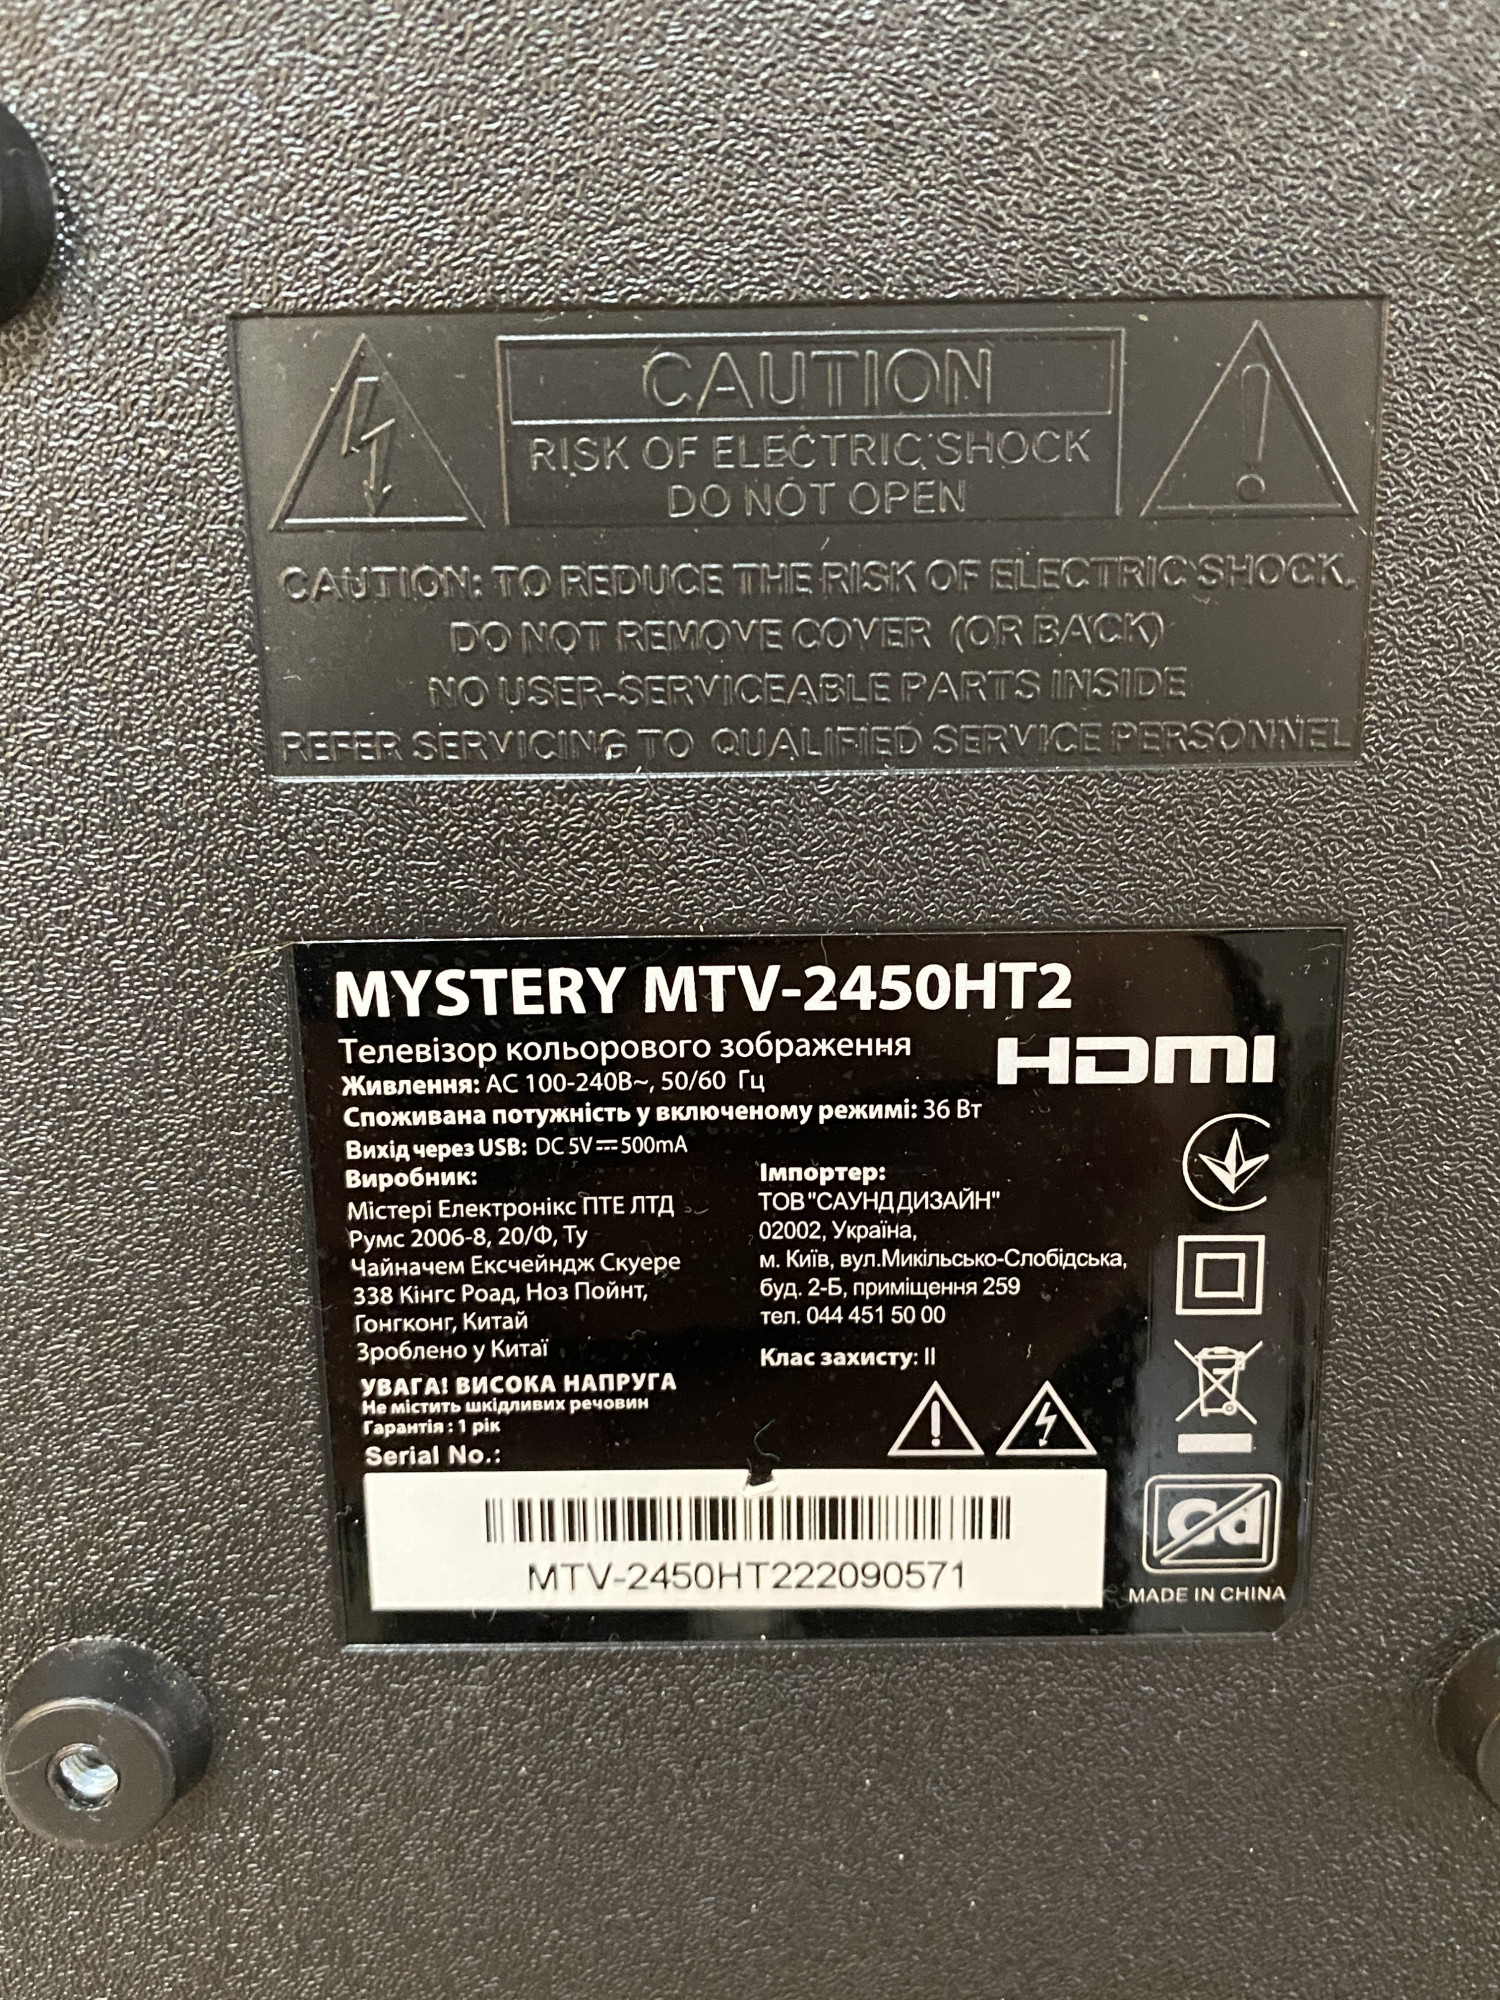 Телевізор Mystery MTV-2450HT2 2